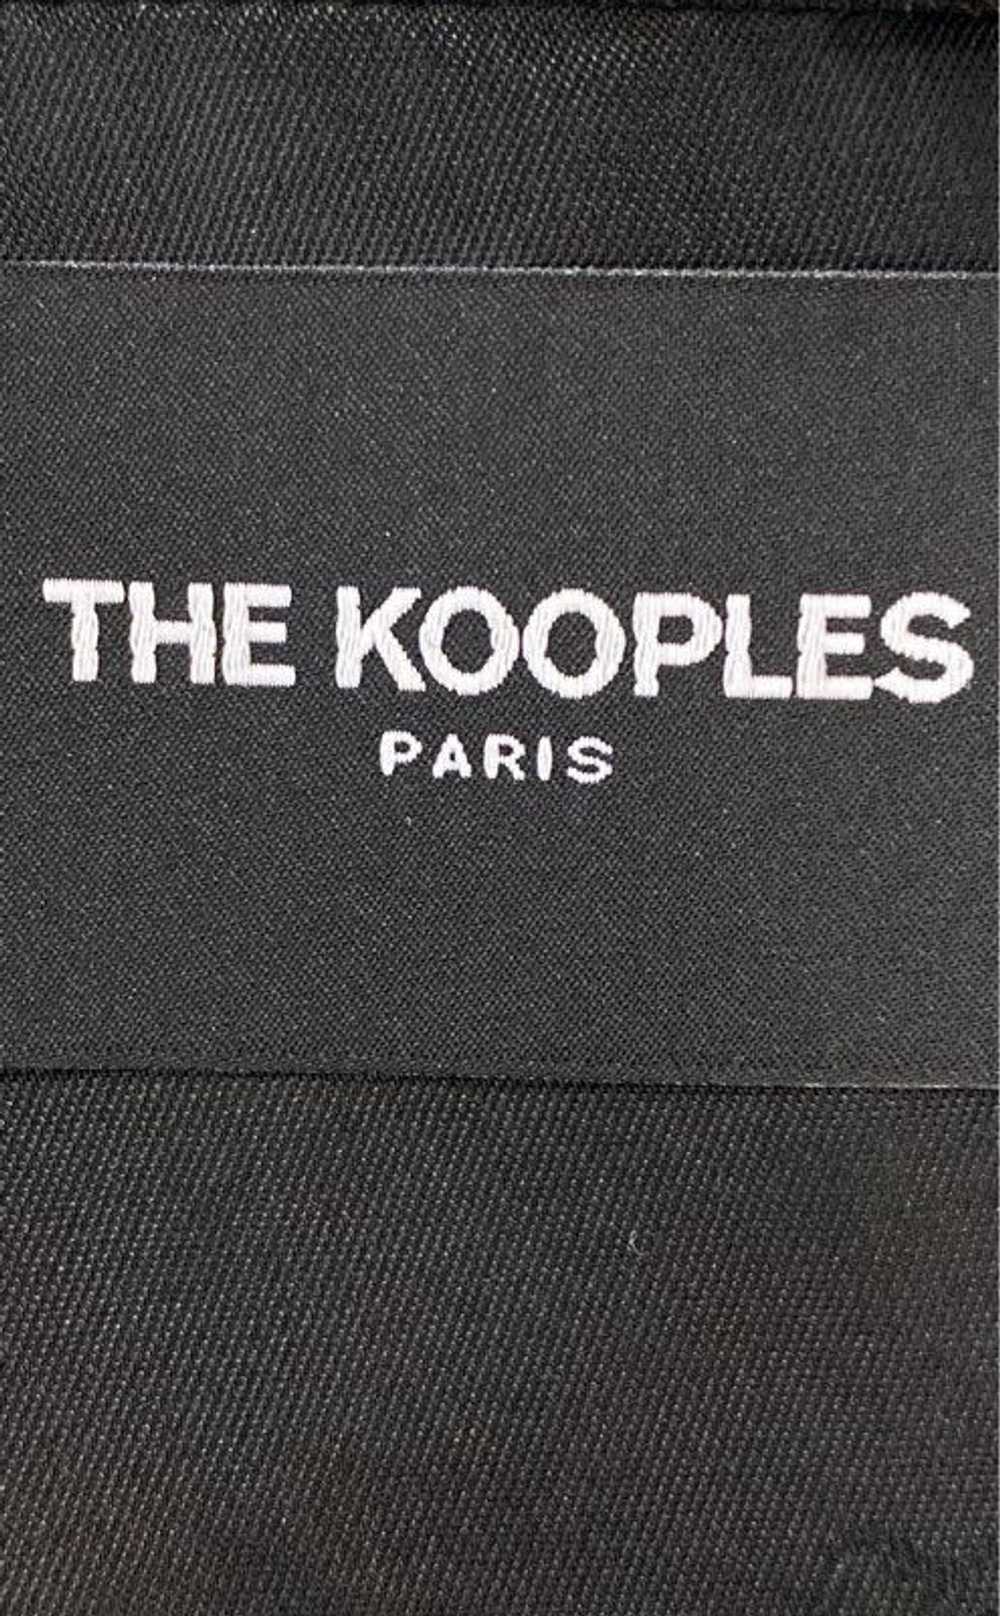 The Kooples Paris Black Suit - Size 34/36 - image 3